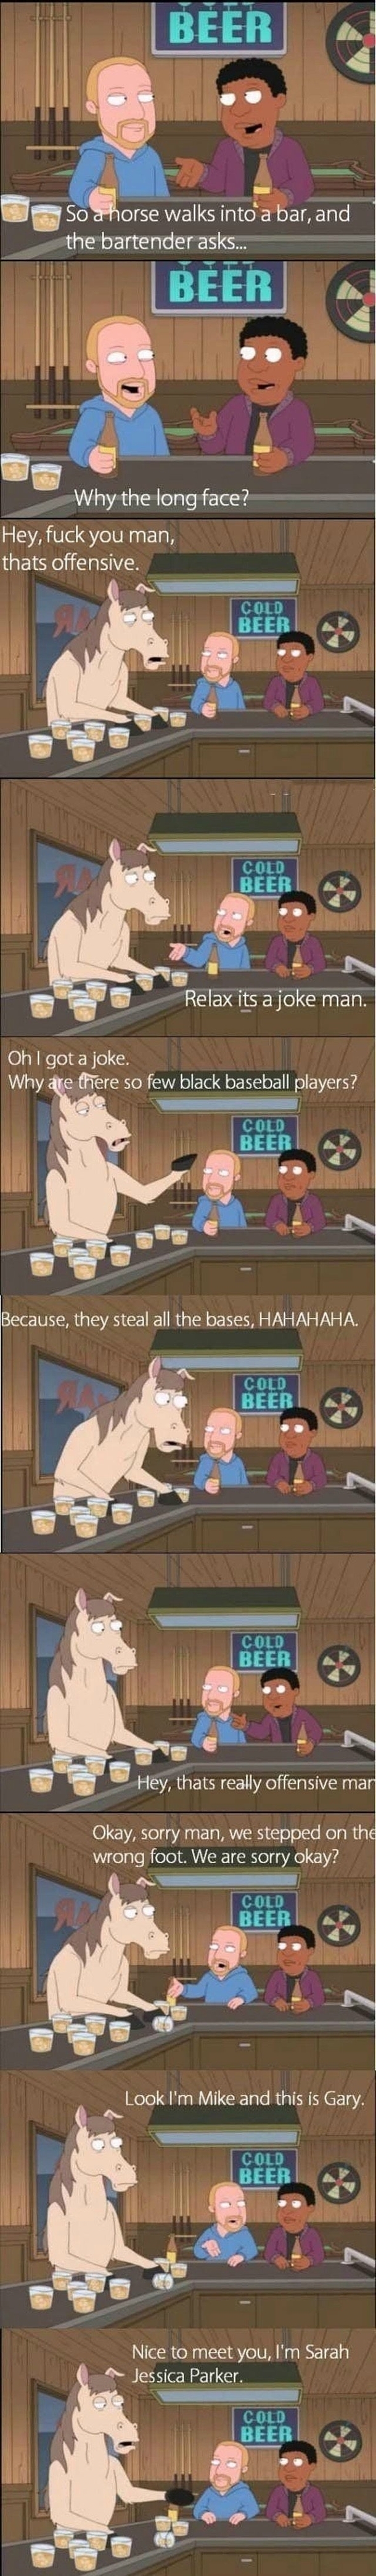 So a horse walks into a bar